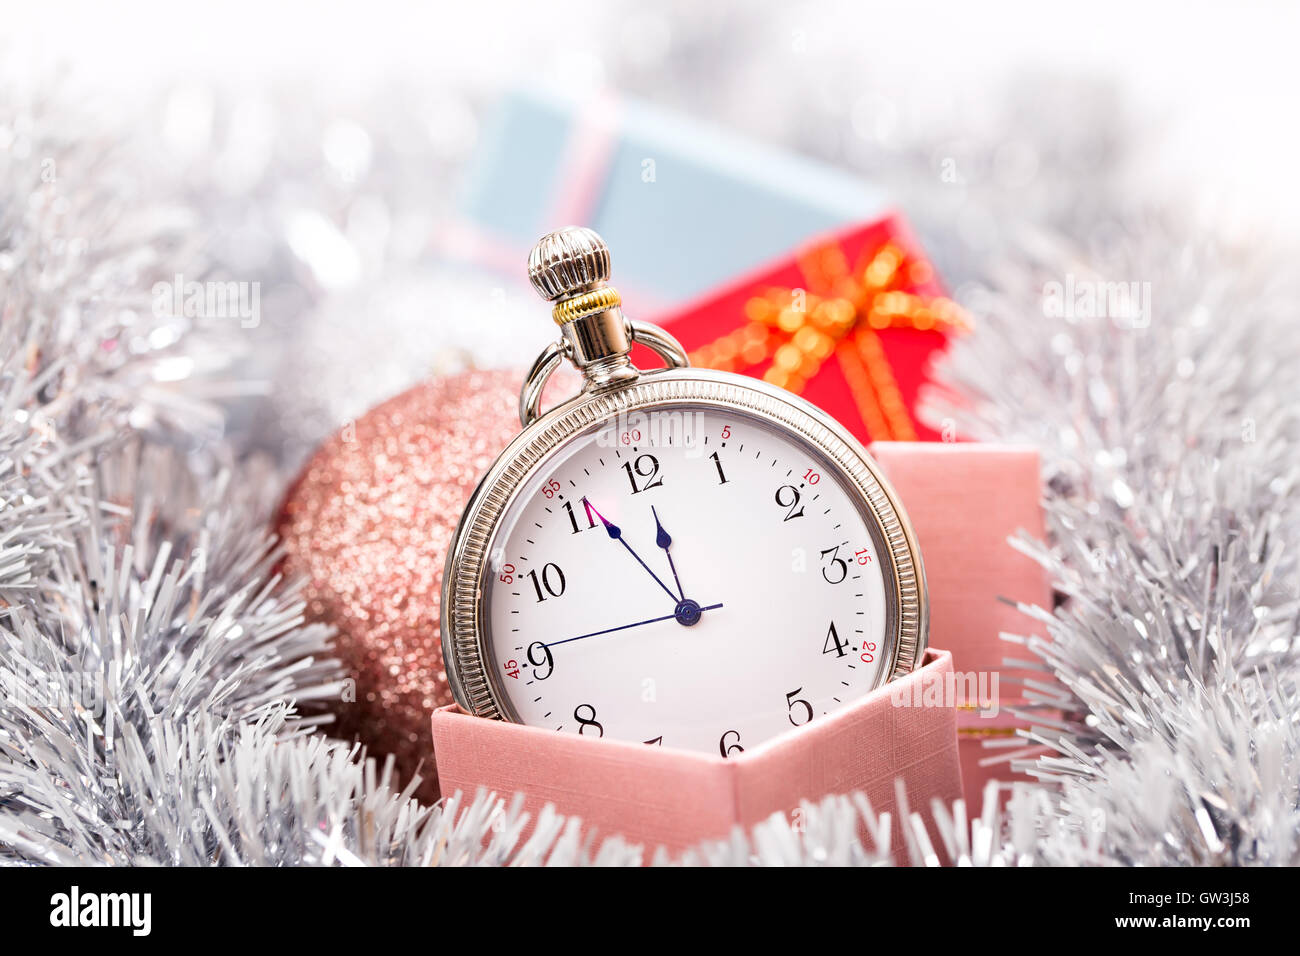 Concepto De Nuevo Año 2018 De Radio Reloj Nuevo Año Y Feliz Navidad 2018  Foto de archivo - Imagen de recordatorio, perezoso: 190384314